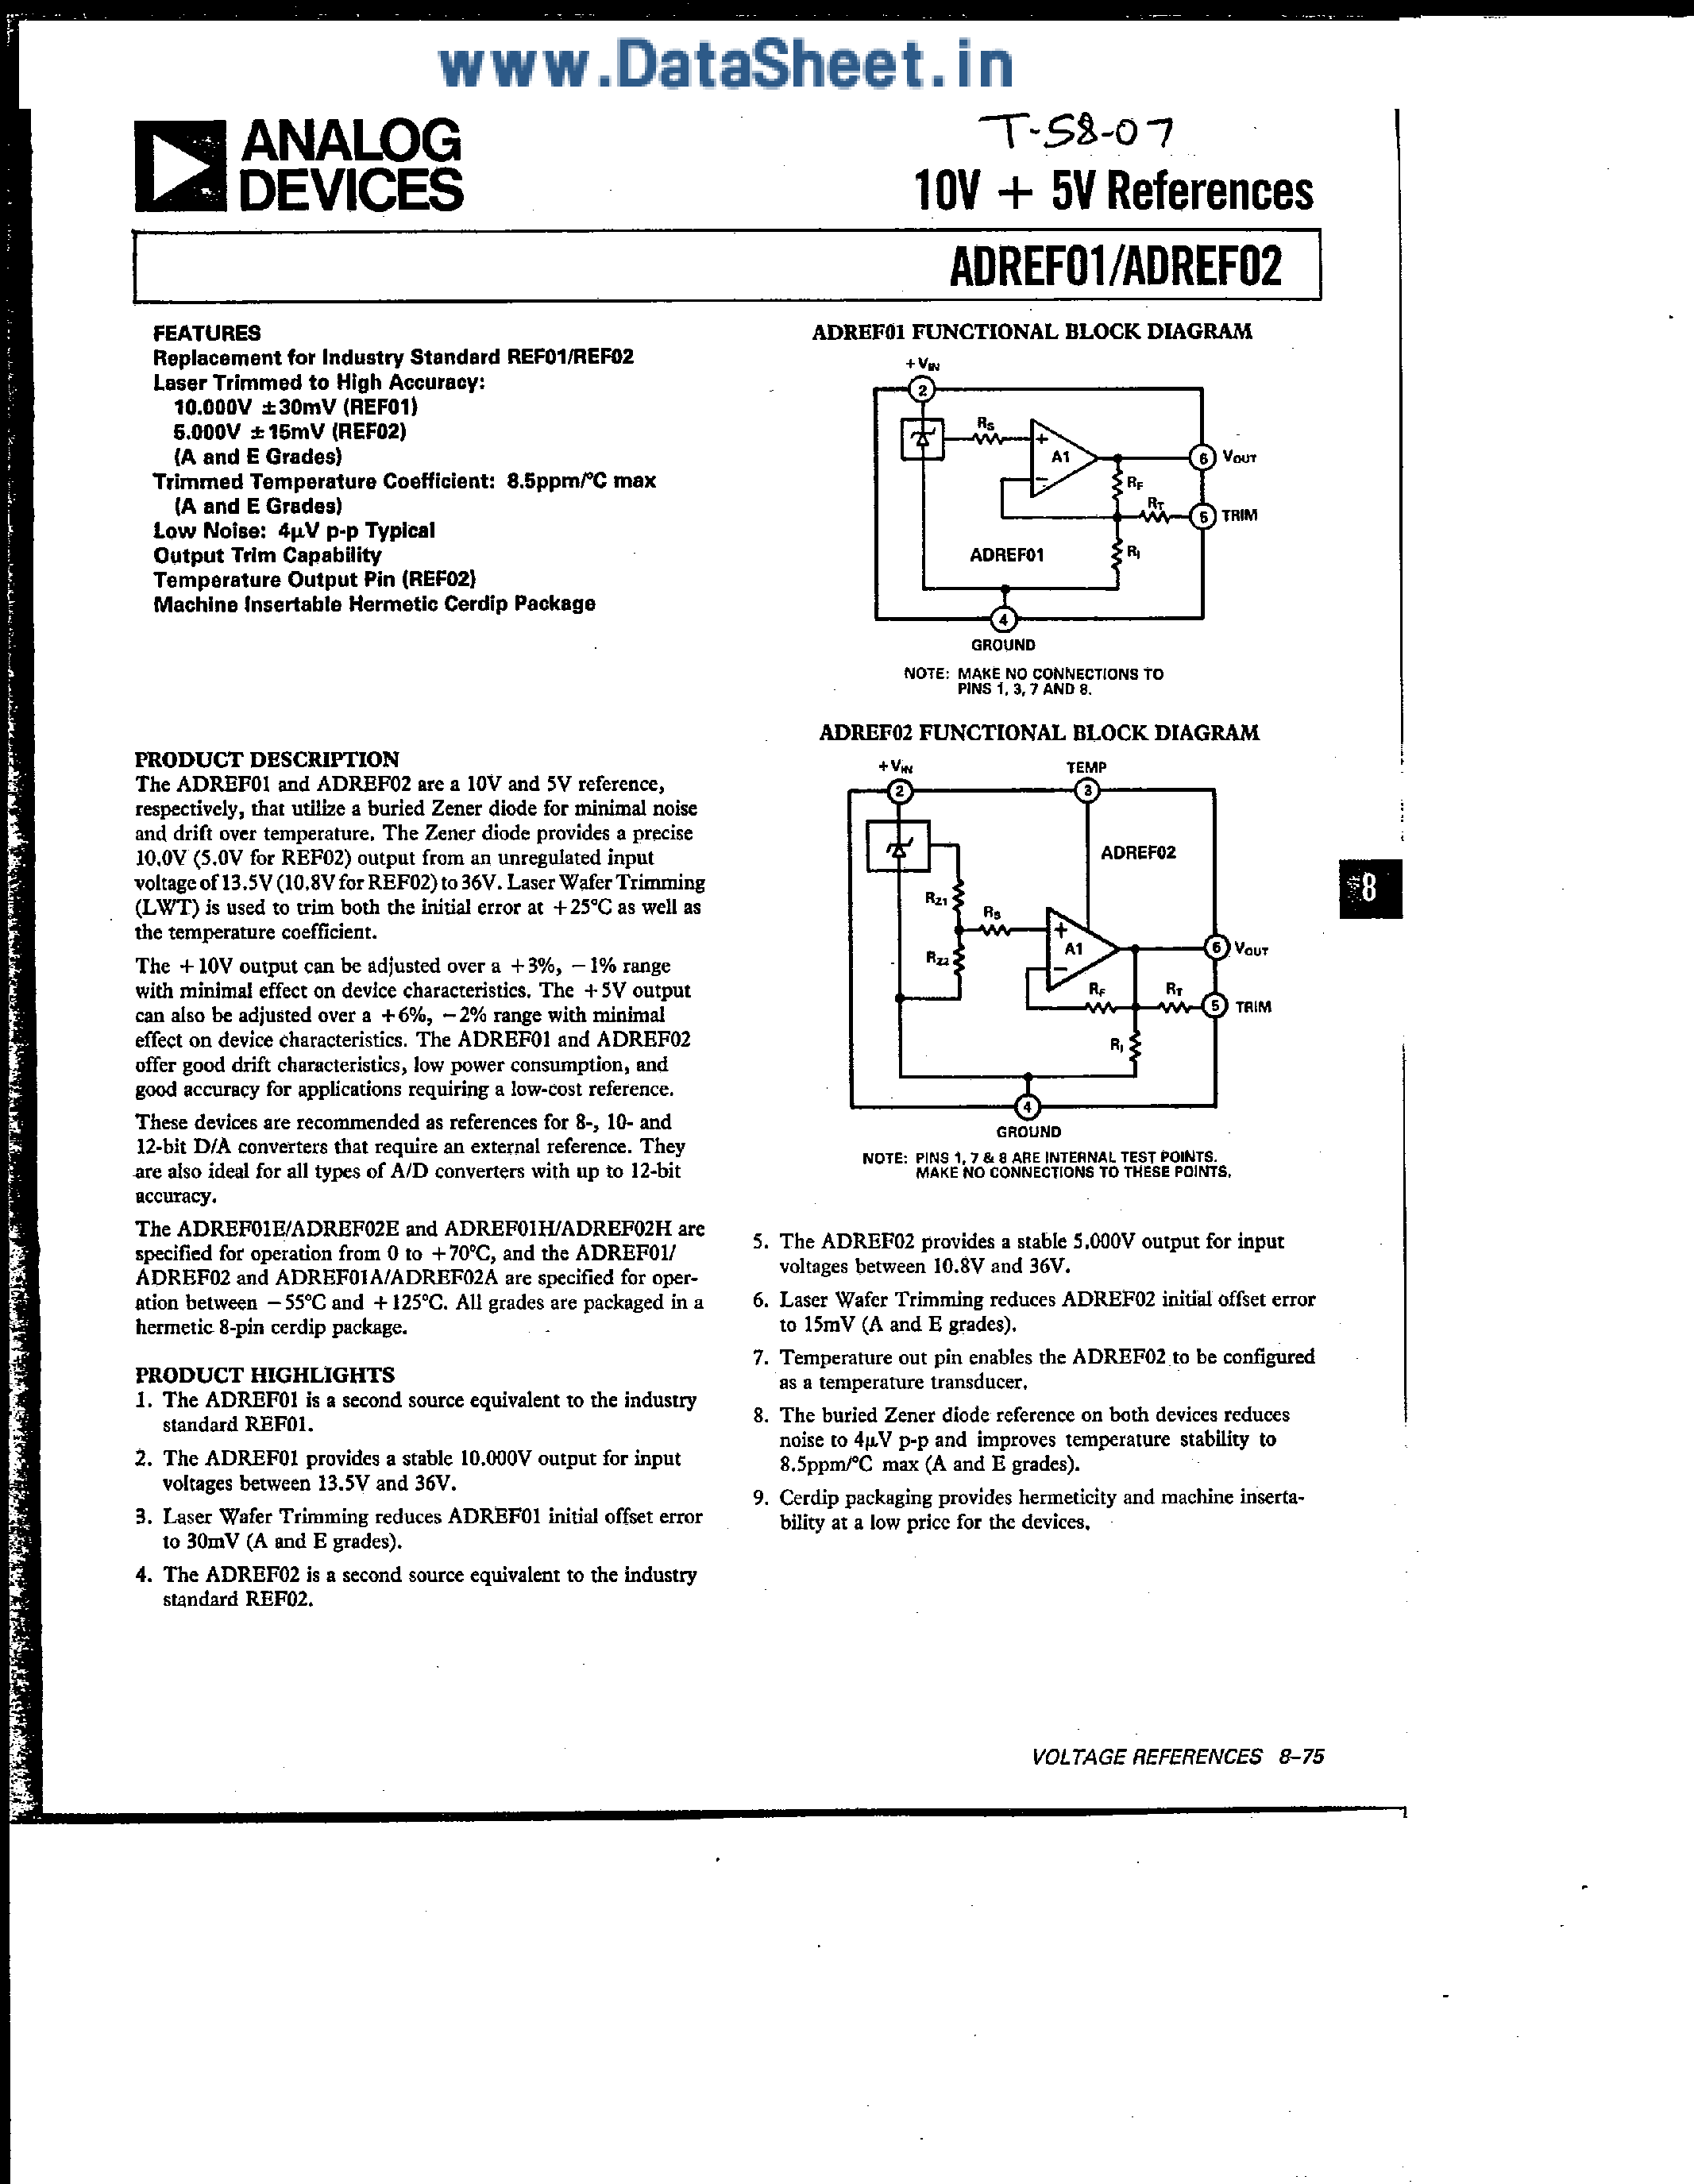 Datasheet ADREF01 - (ADREF01 / ADREF02) 10 + 5 Volt Reference page 1